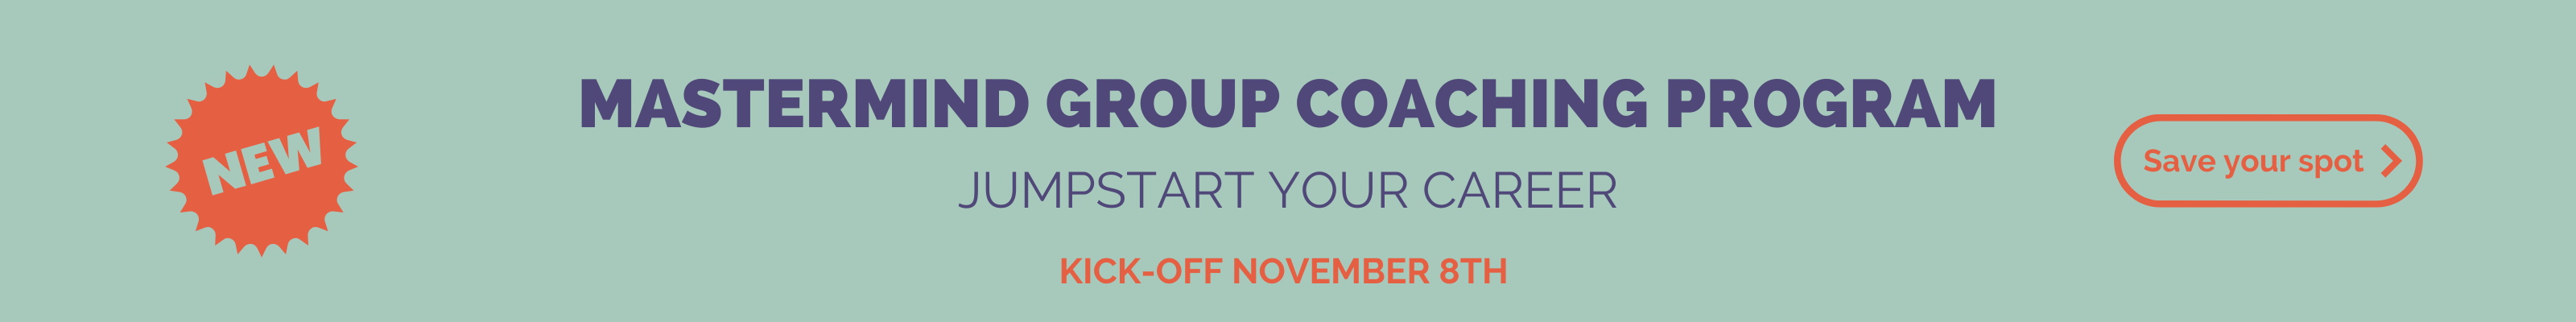 mastermind group coaching